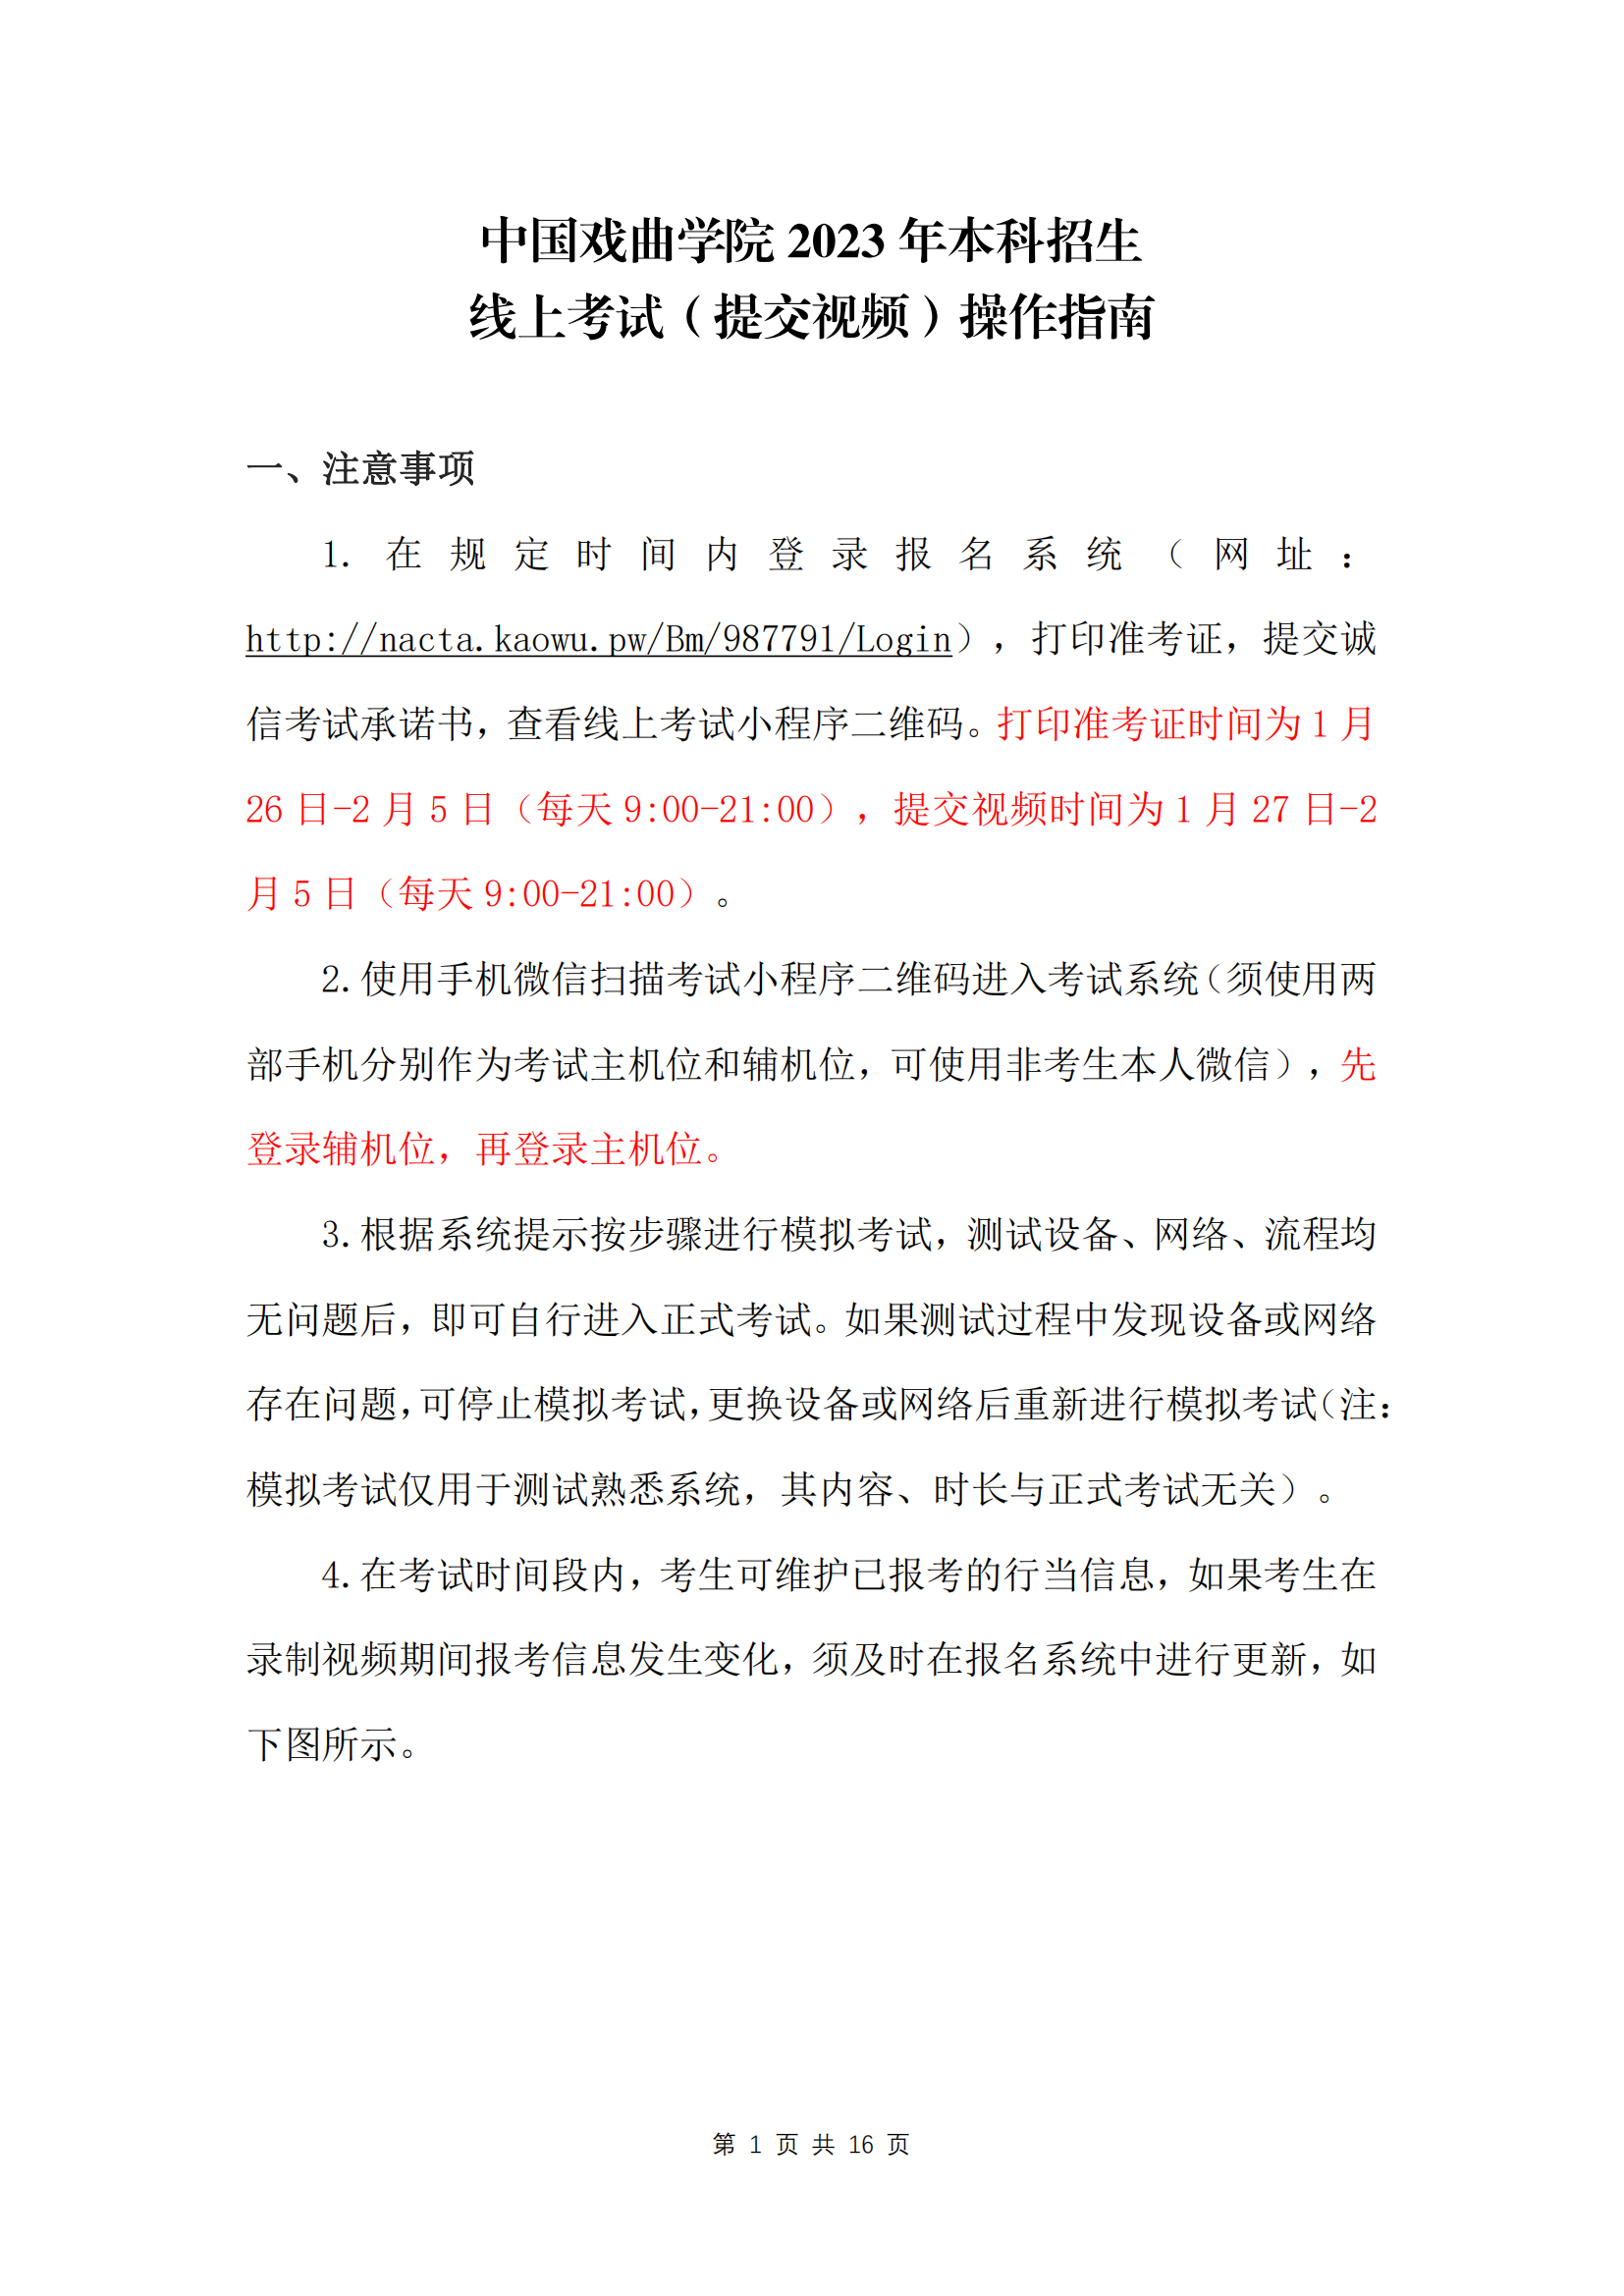 中国戏曲学院2023年本科招生线上考试(提交视频) 操作指南_00.png